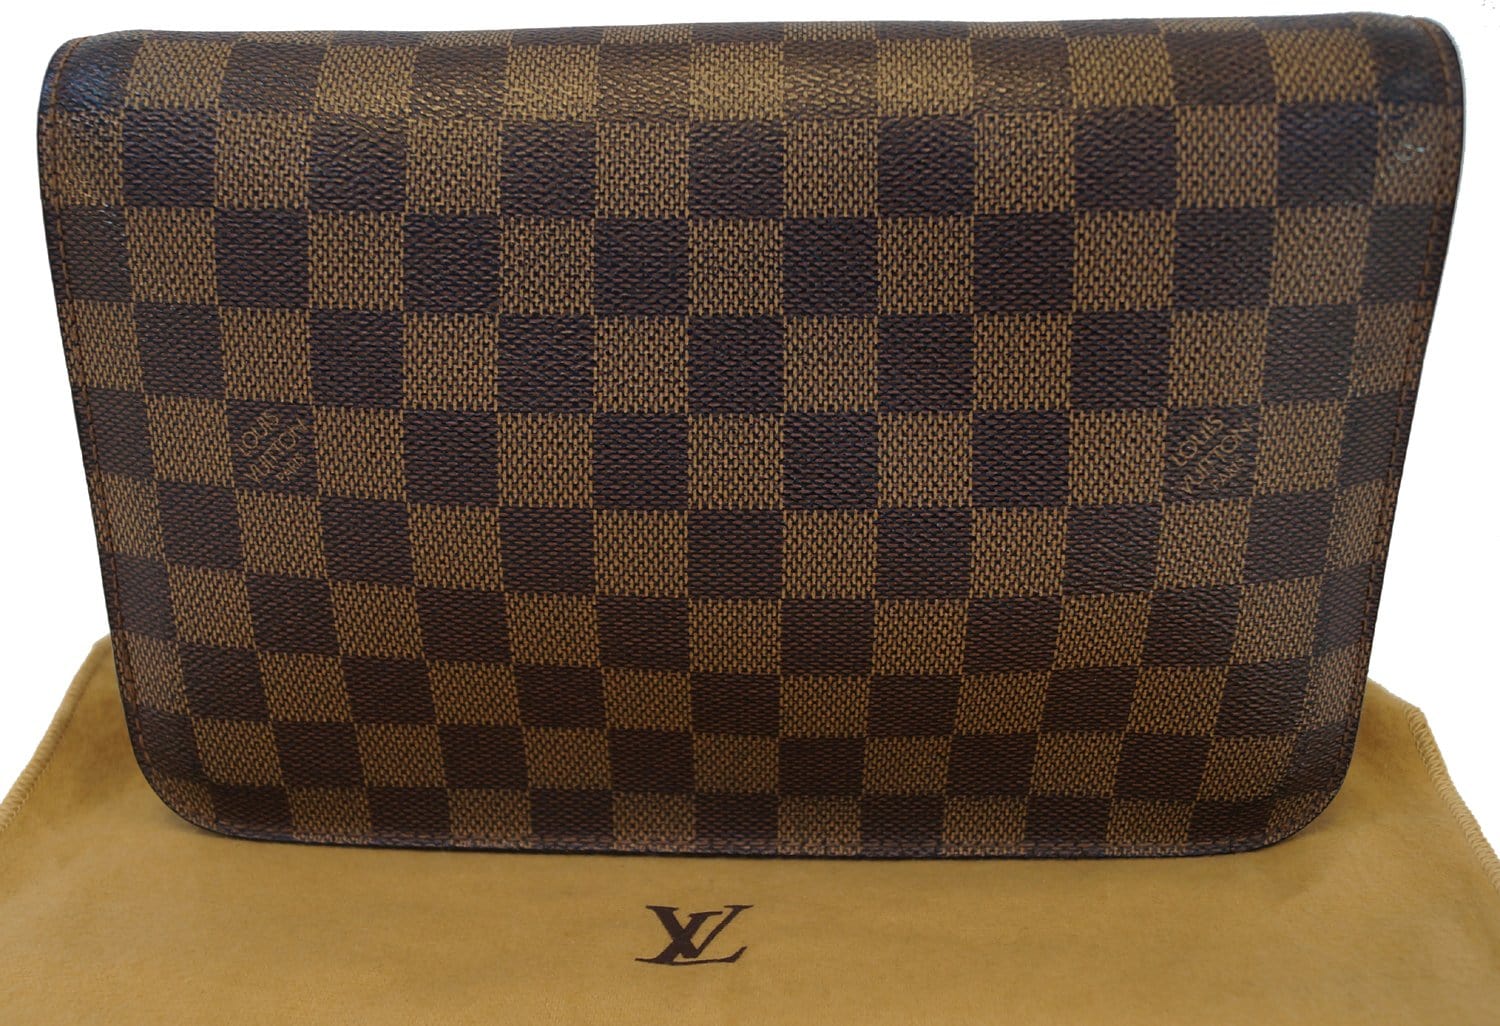 Authentic Louis Vuitton Saint Louis Damier Ebene Leather Clutch